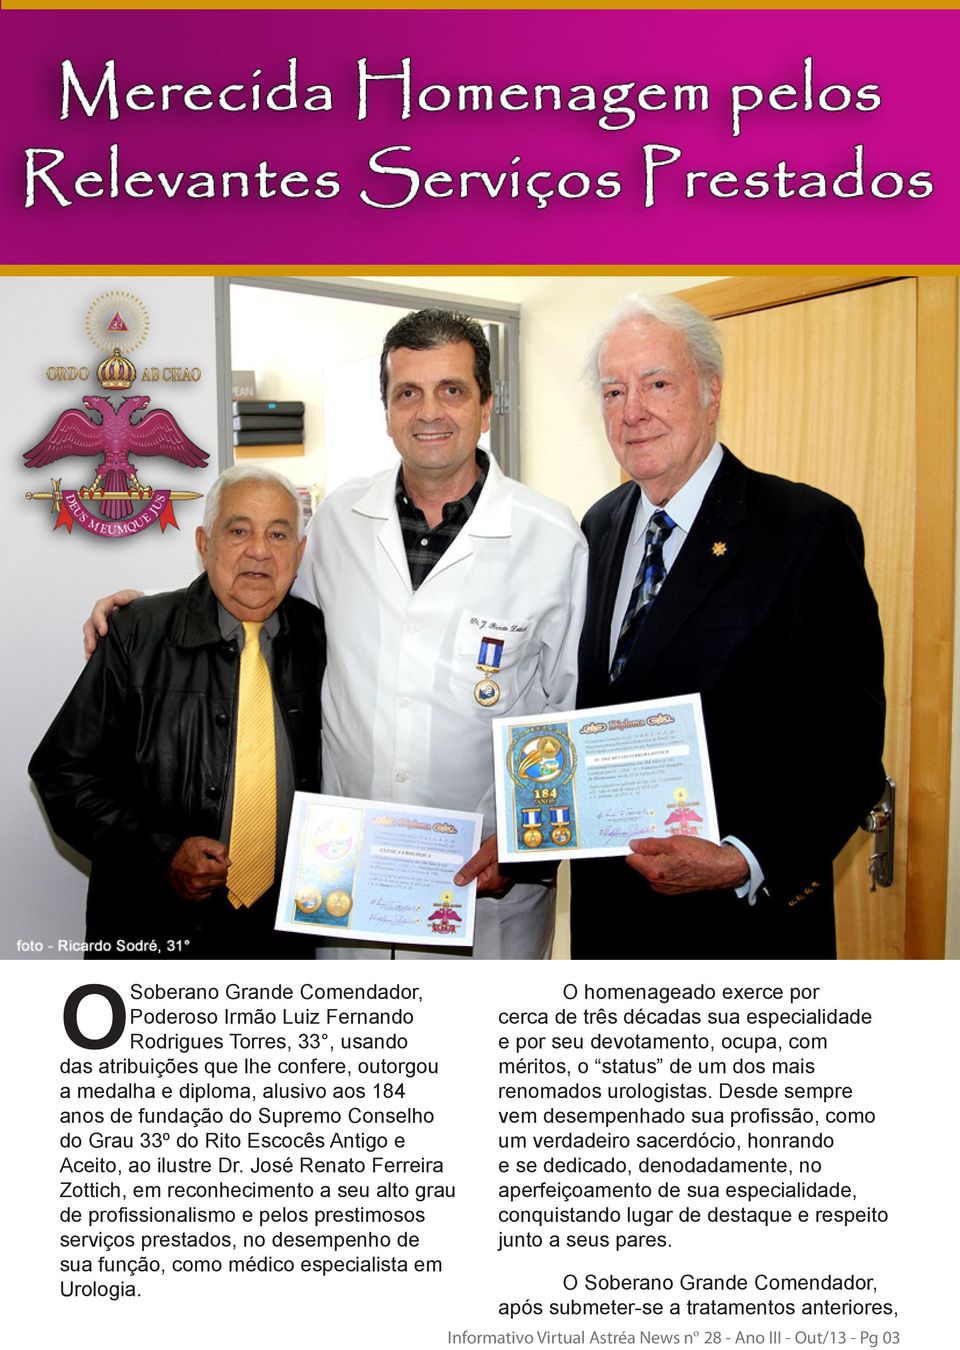 José Renato Ferreira Zottich, em reconhecimento a seu alto grau de profissionalismo e pelos prestimosos serviços prestados, no desempenho de sua função, como médico especialista em Urologia.